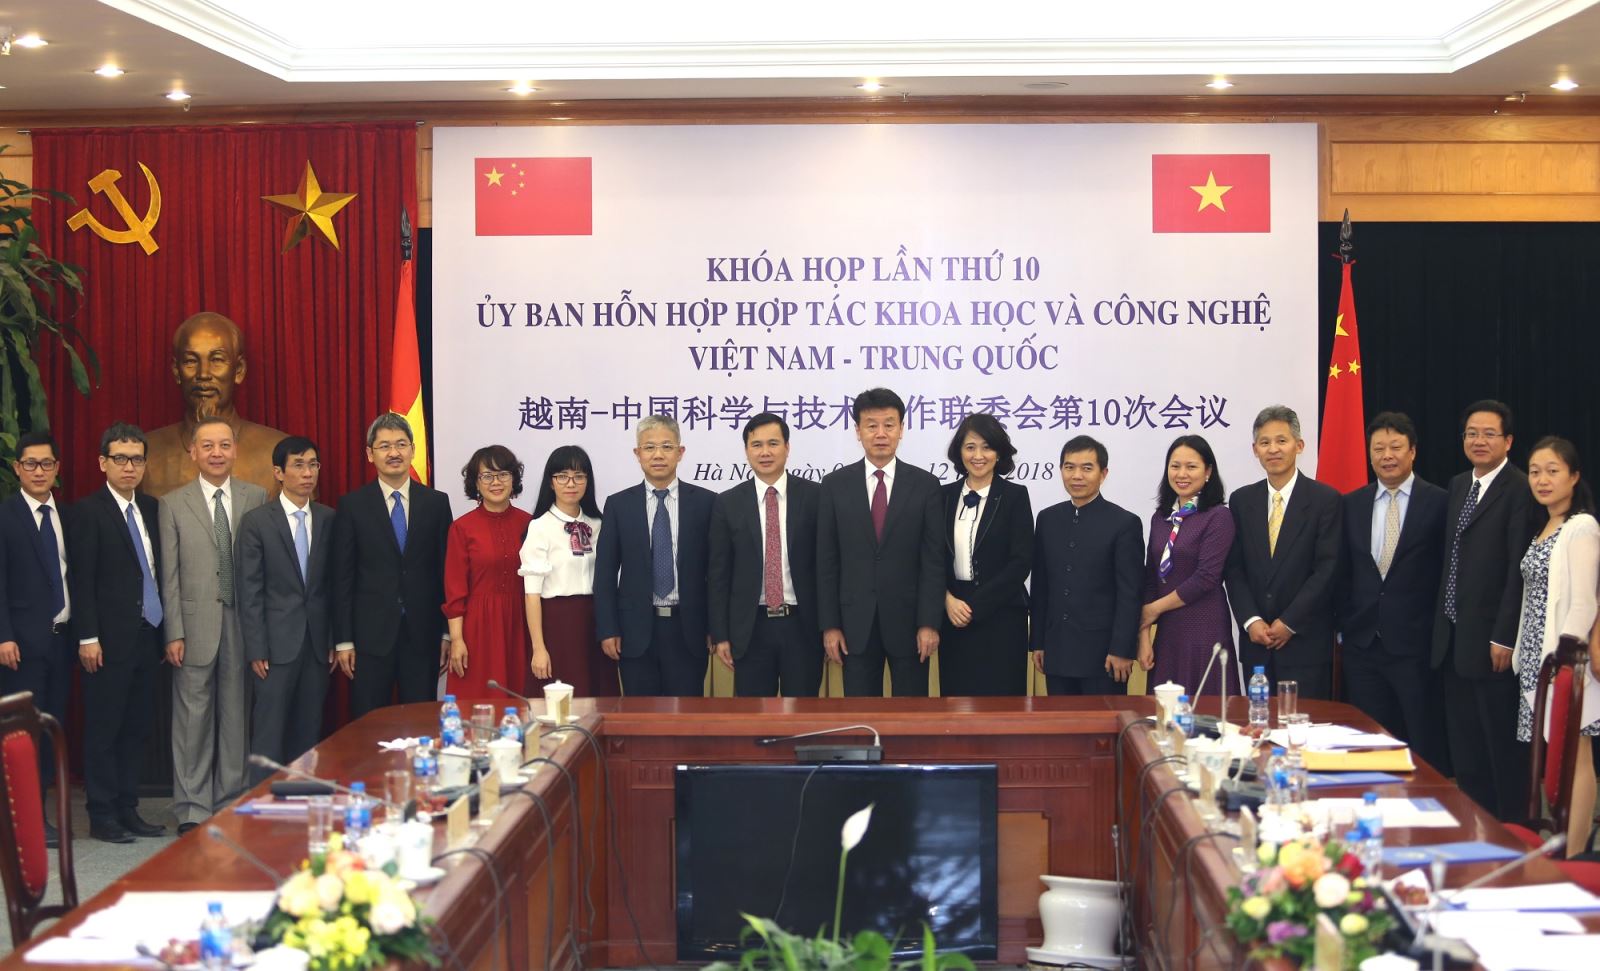 Việt Nam – Trung Quốc sẽ mở rộng hợp tác song phương về khoa học, công nghệ và đổi mới sáng tạo